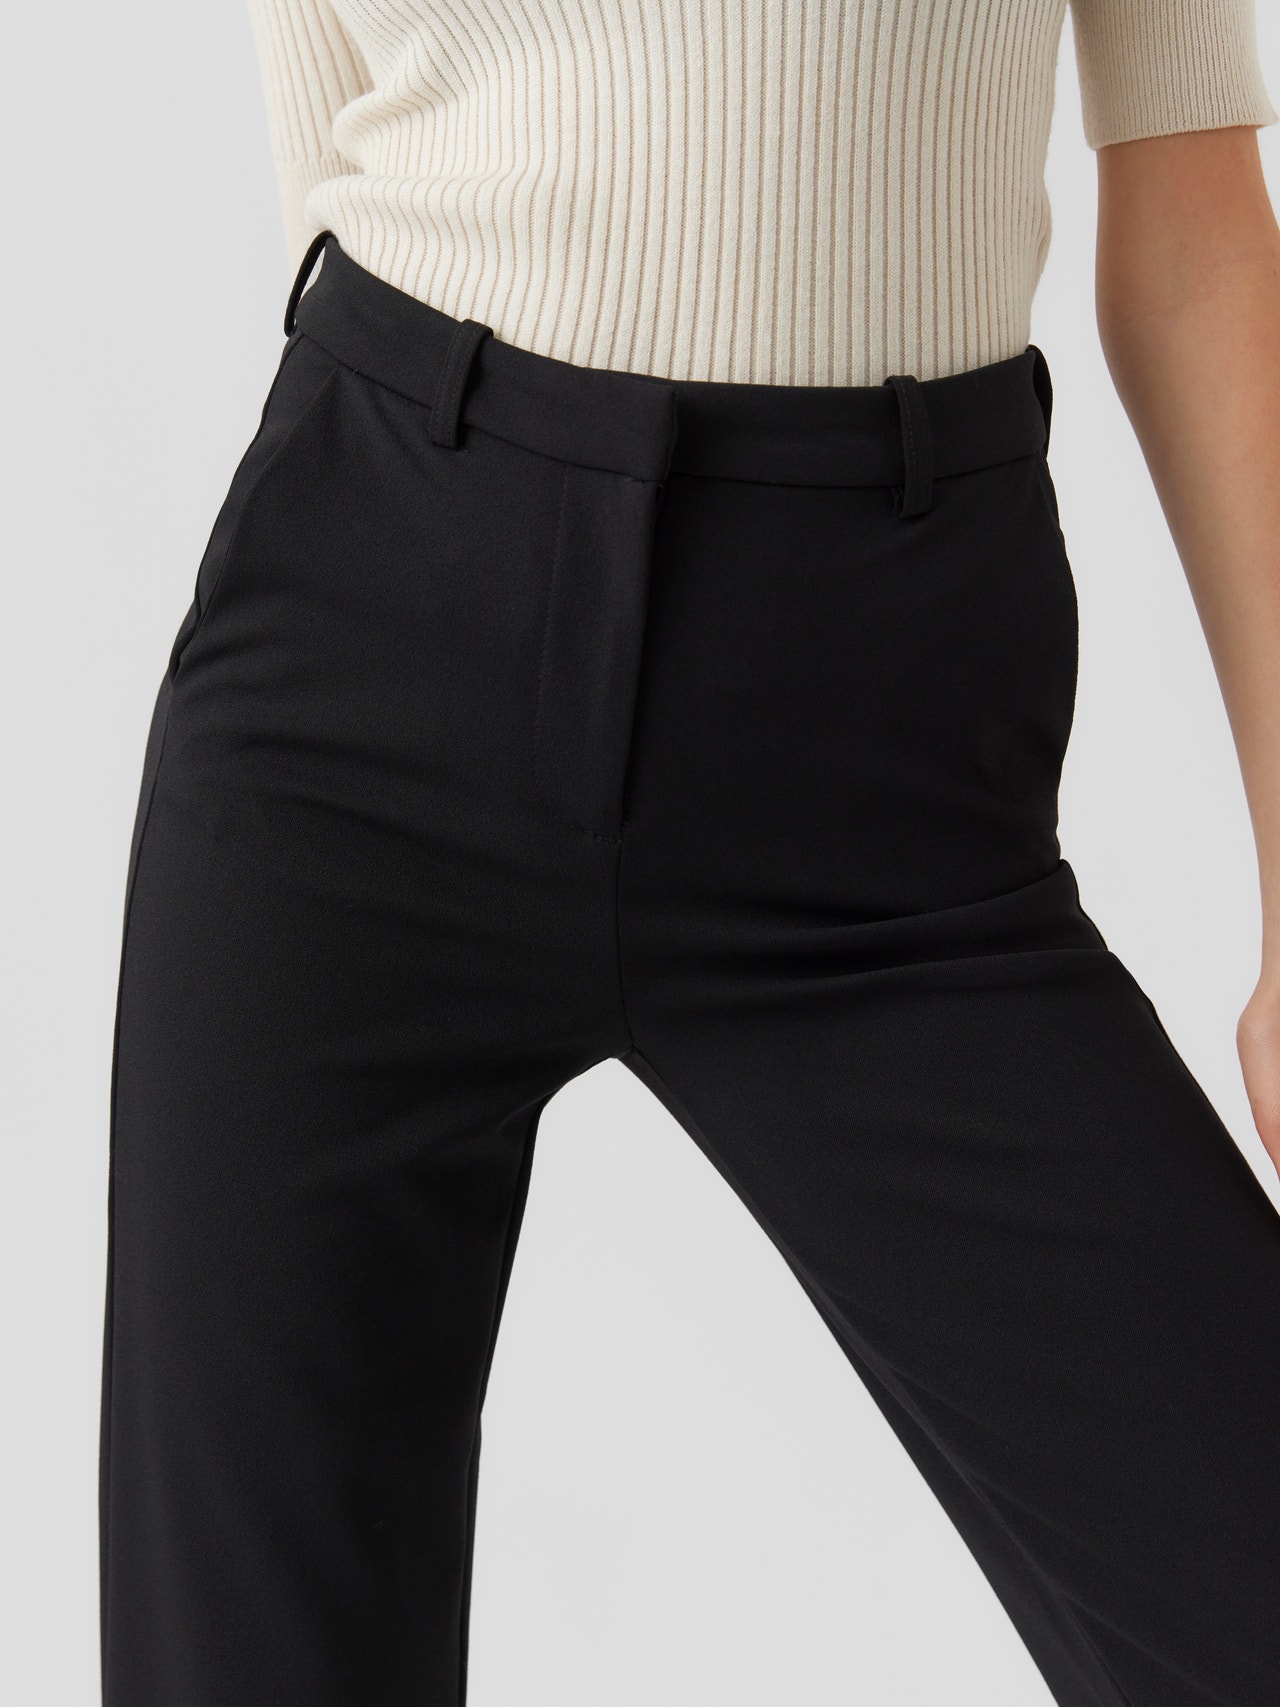 Vero Moda VMZAMIRA Cintura media Pantalones -Black - 10263670